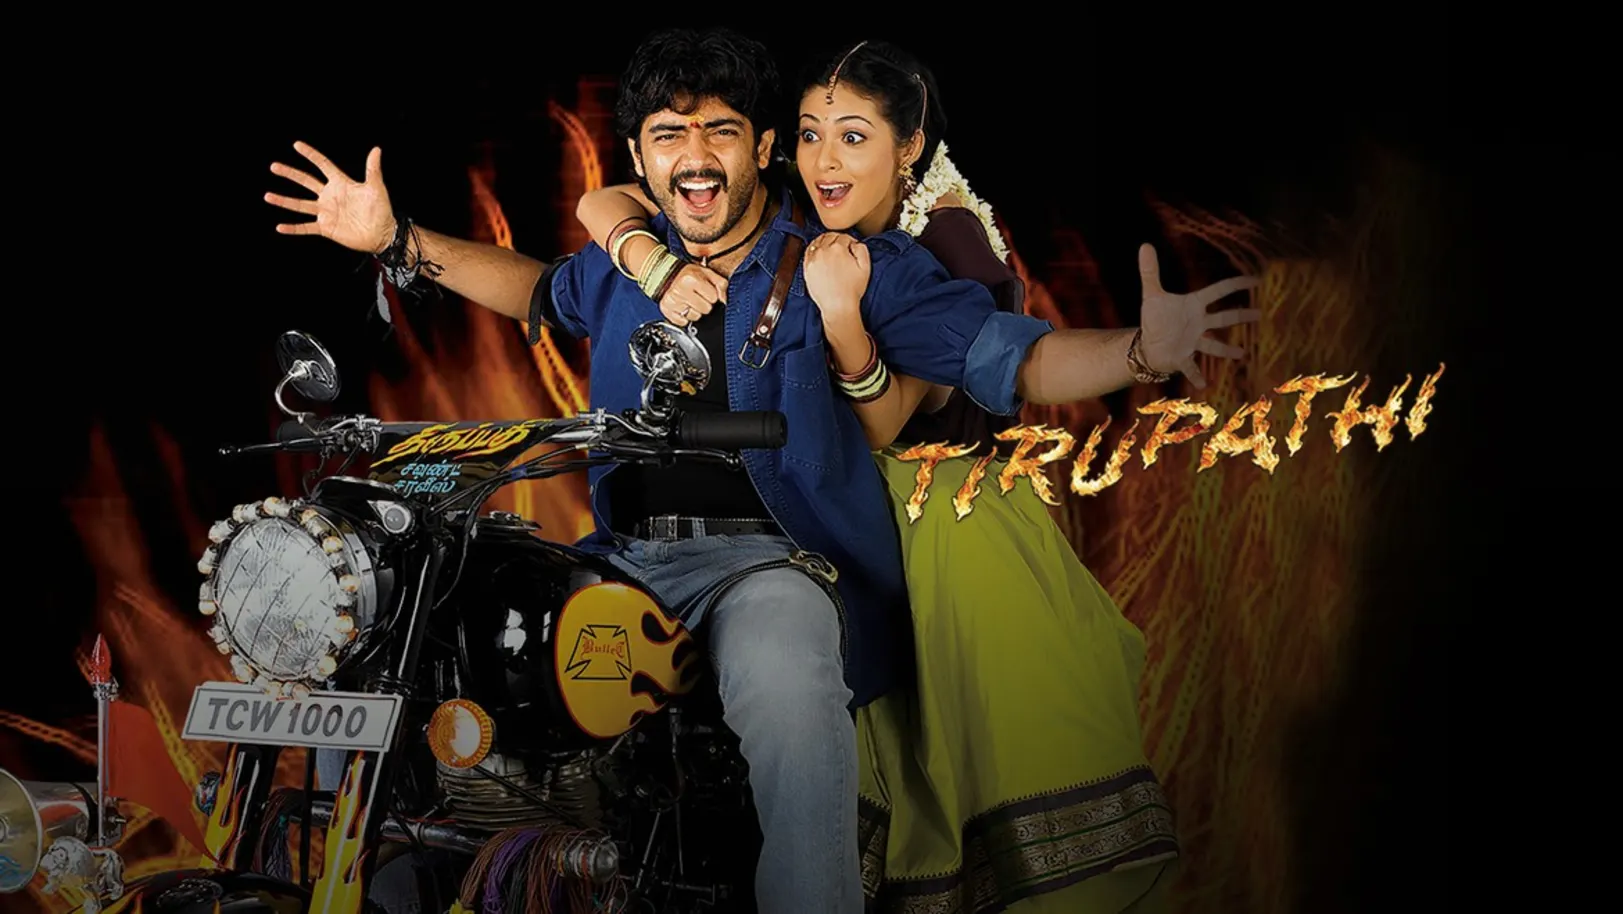 Thirupathi Movie